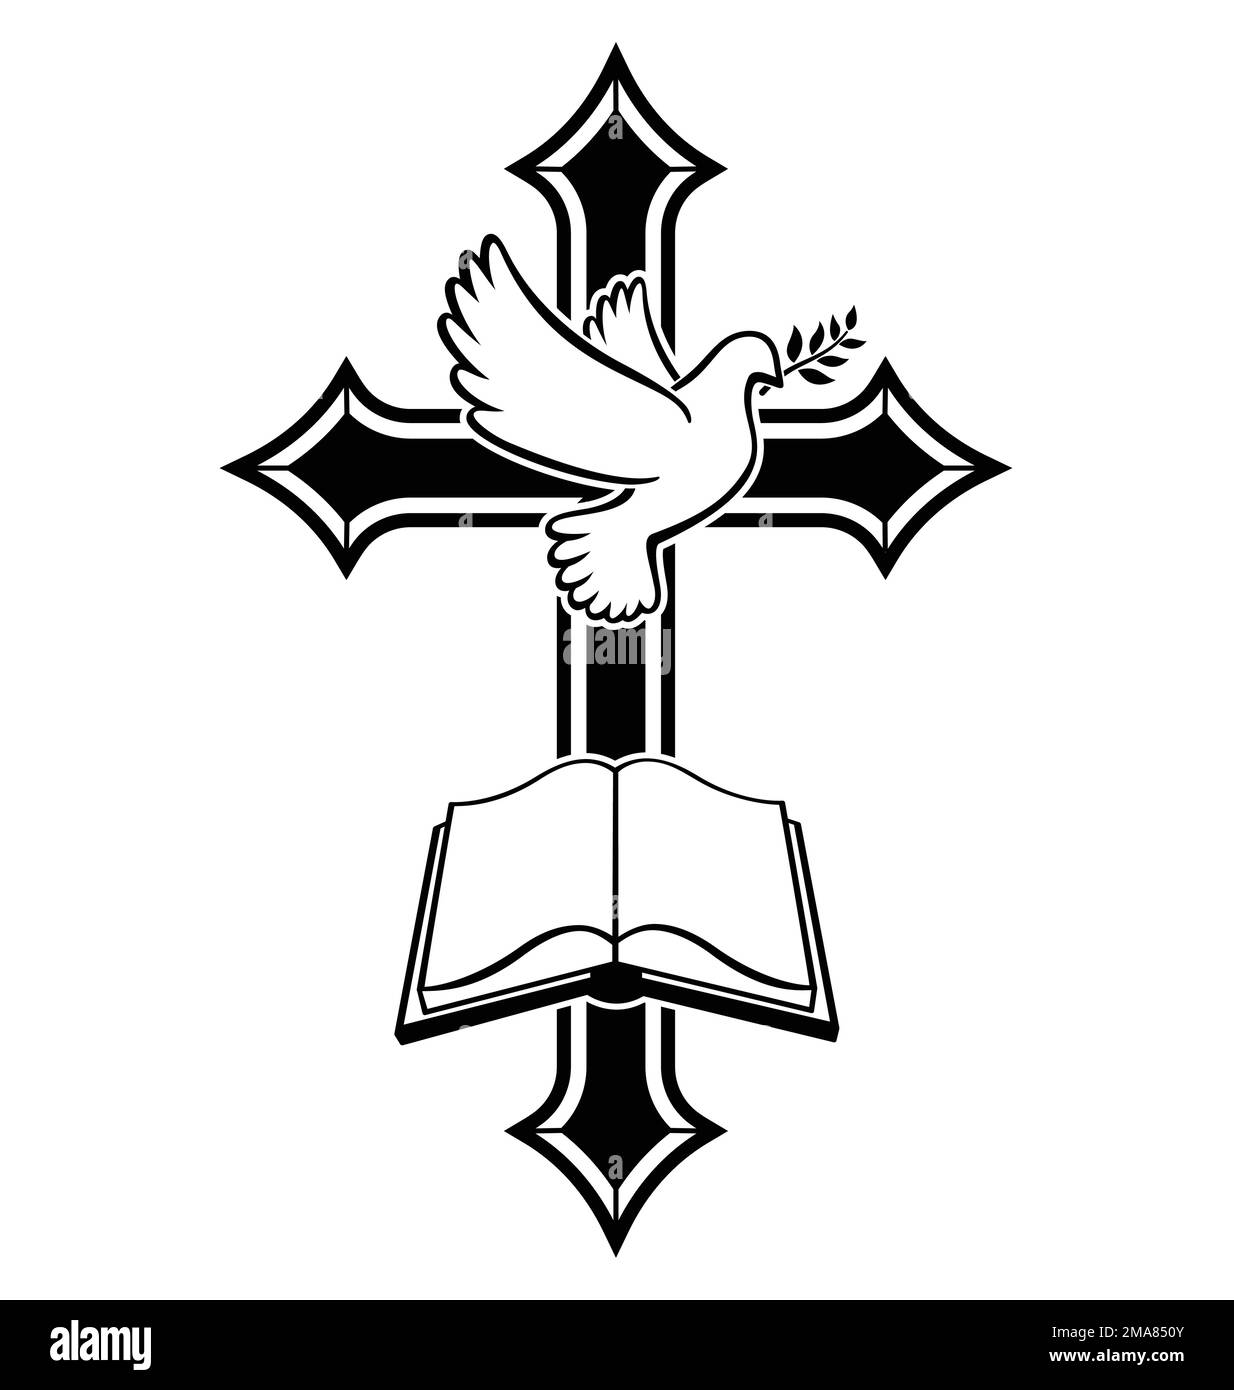 Belle croix chrétienne avec paix colombe et ouvert bible livre Crucifix vecteur isolé sur fond blanc Illustration de Vecteur